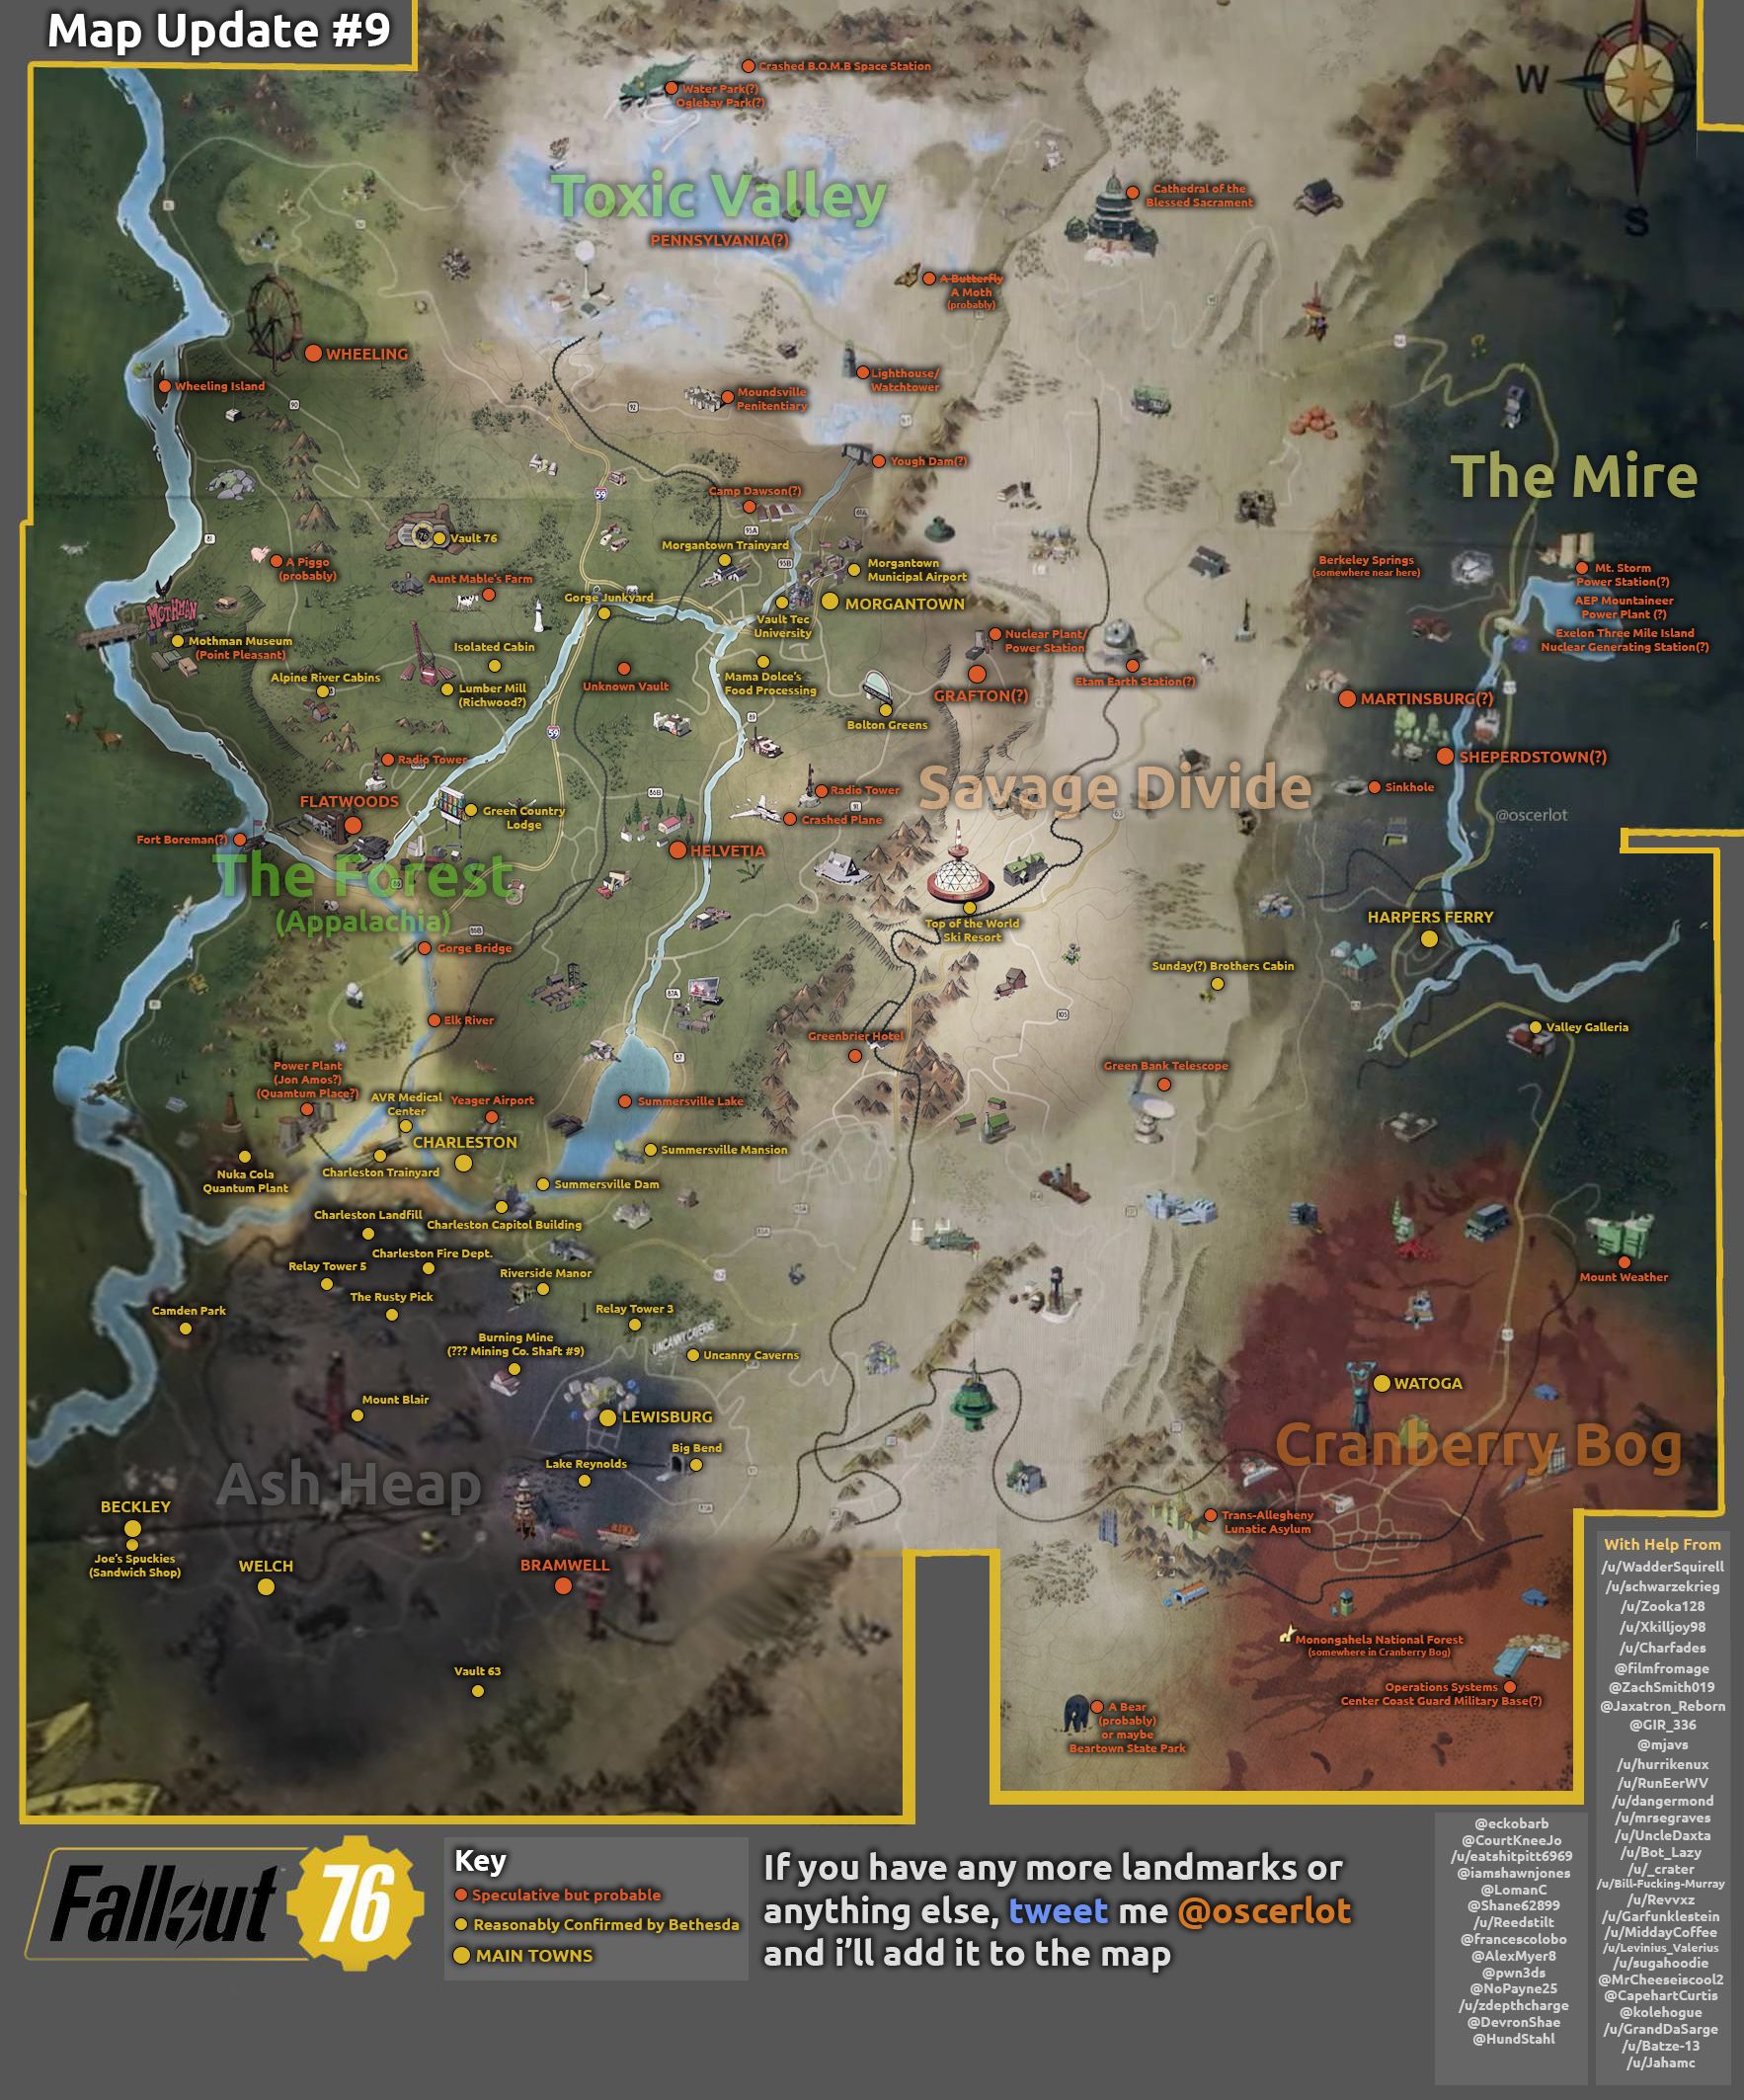 Fallout 76 haritasının bilinen tüm bölgeleri birleştirildi